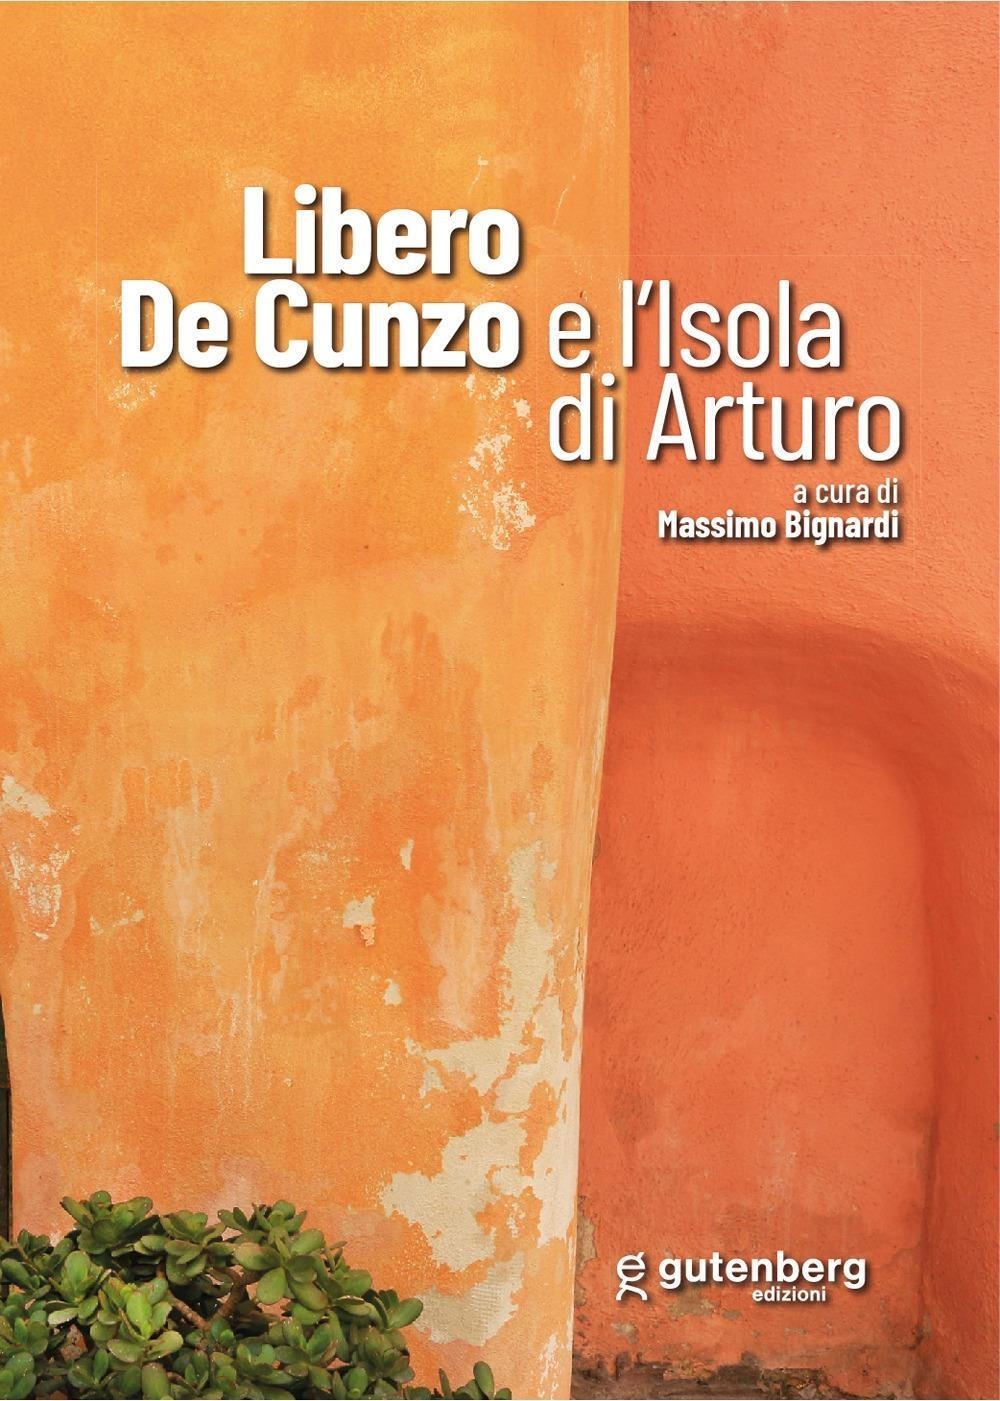 Libri Libero De Cunzo E L'isola Di Arturo NUOVO SIGILLATO, EDIZIONE DEL 05/07/2022 SUBITO DISPONIBILE